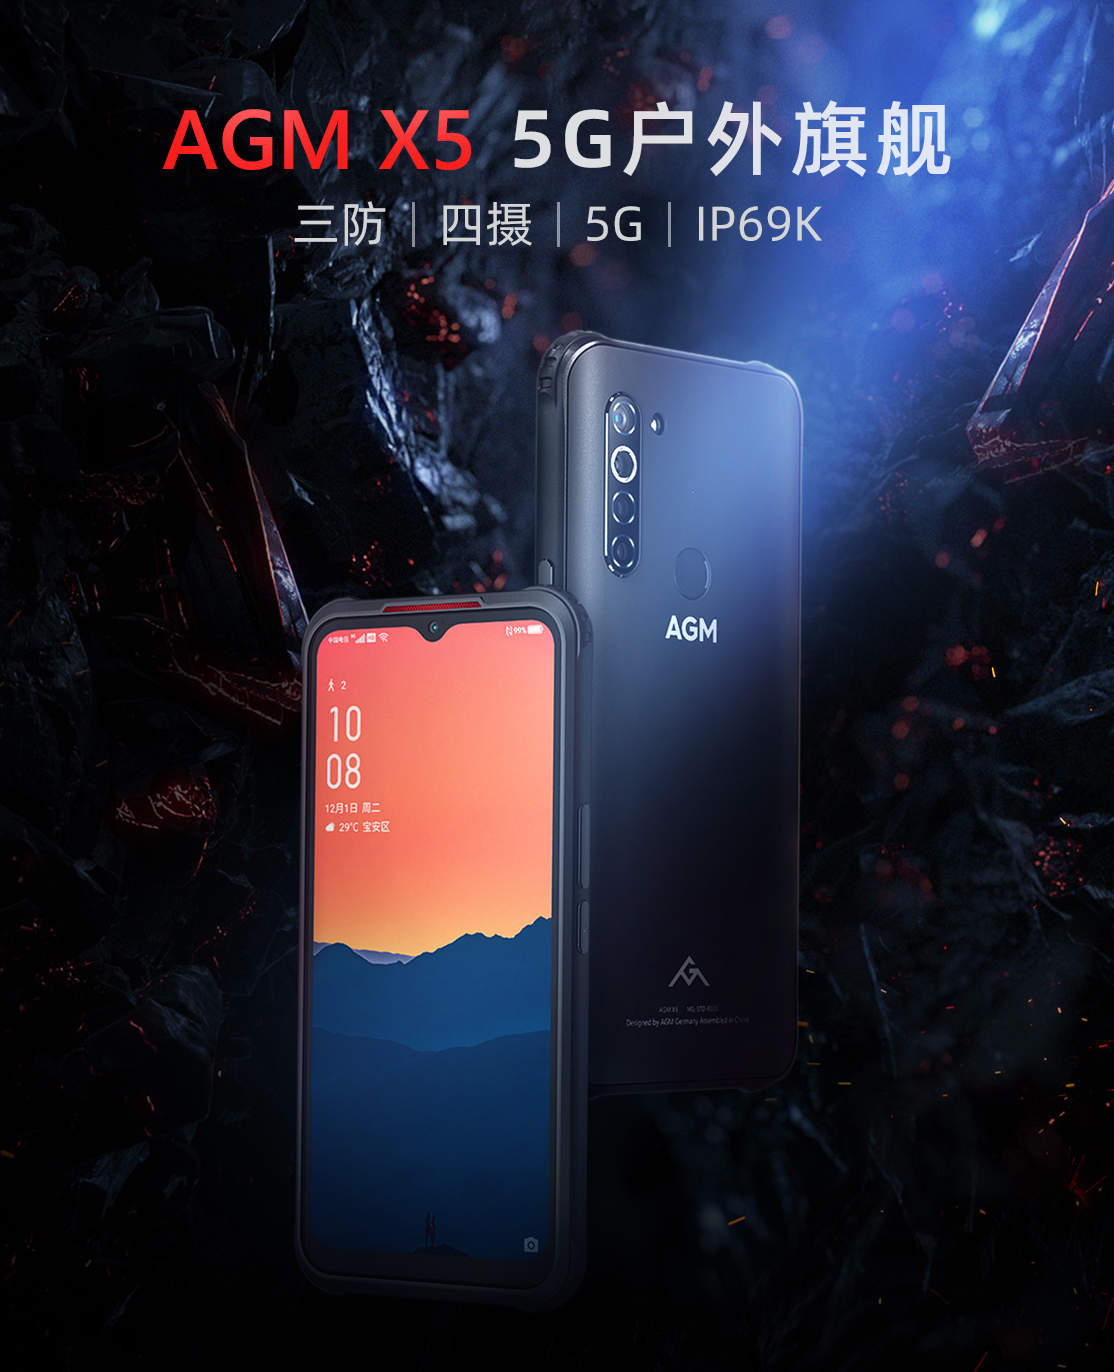 AGM X5三防手机发布 通过IP69K认证